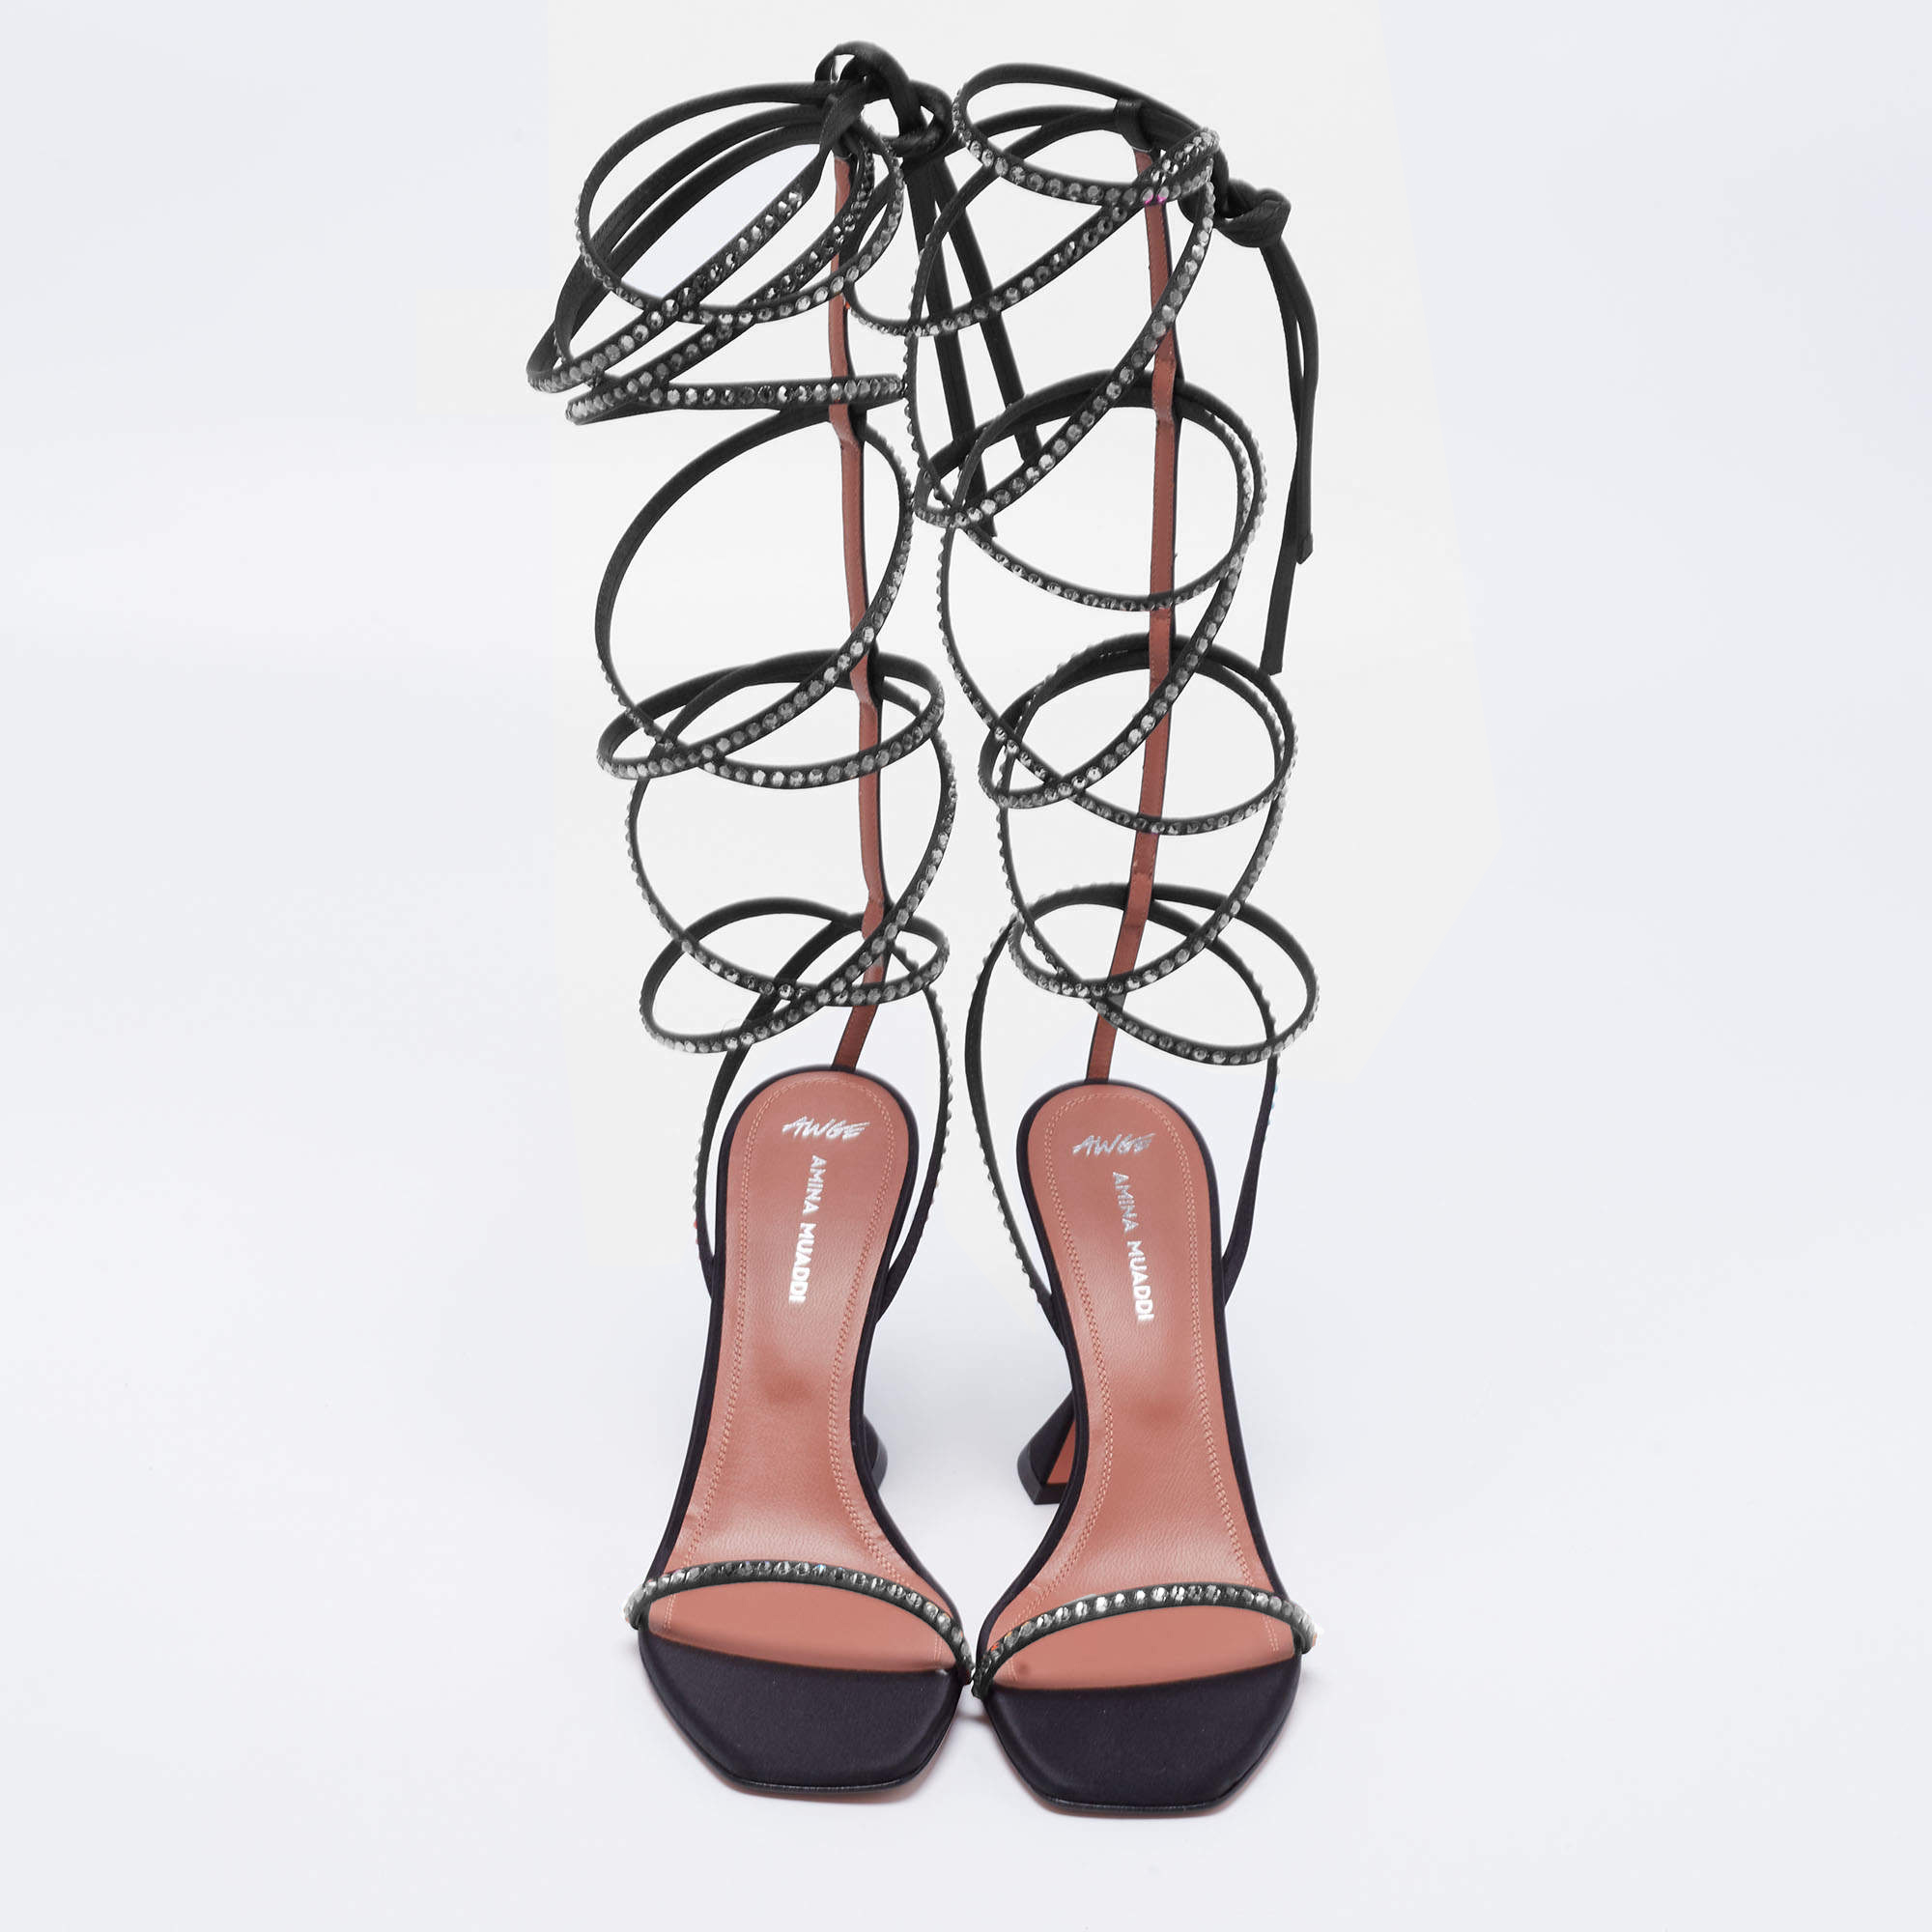 Amina Muaddi Black Satin Crystal Embellished Ankle Wrap Sandals Size 39.5